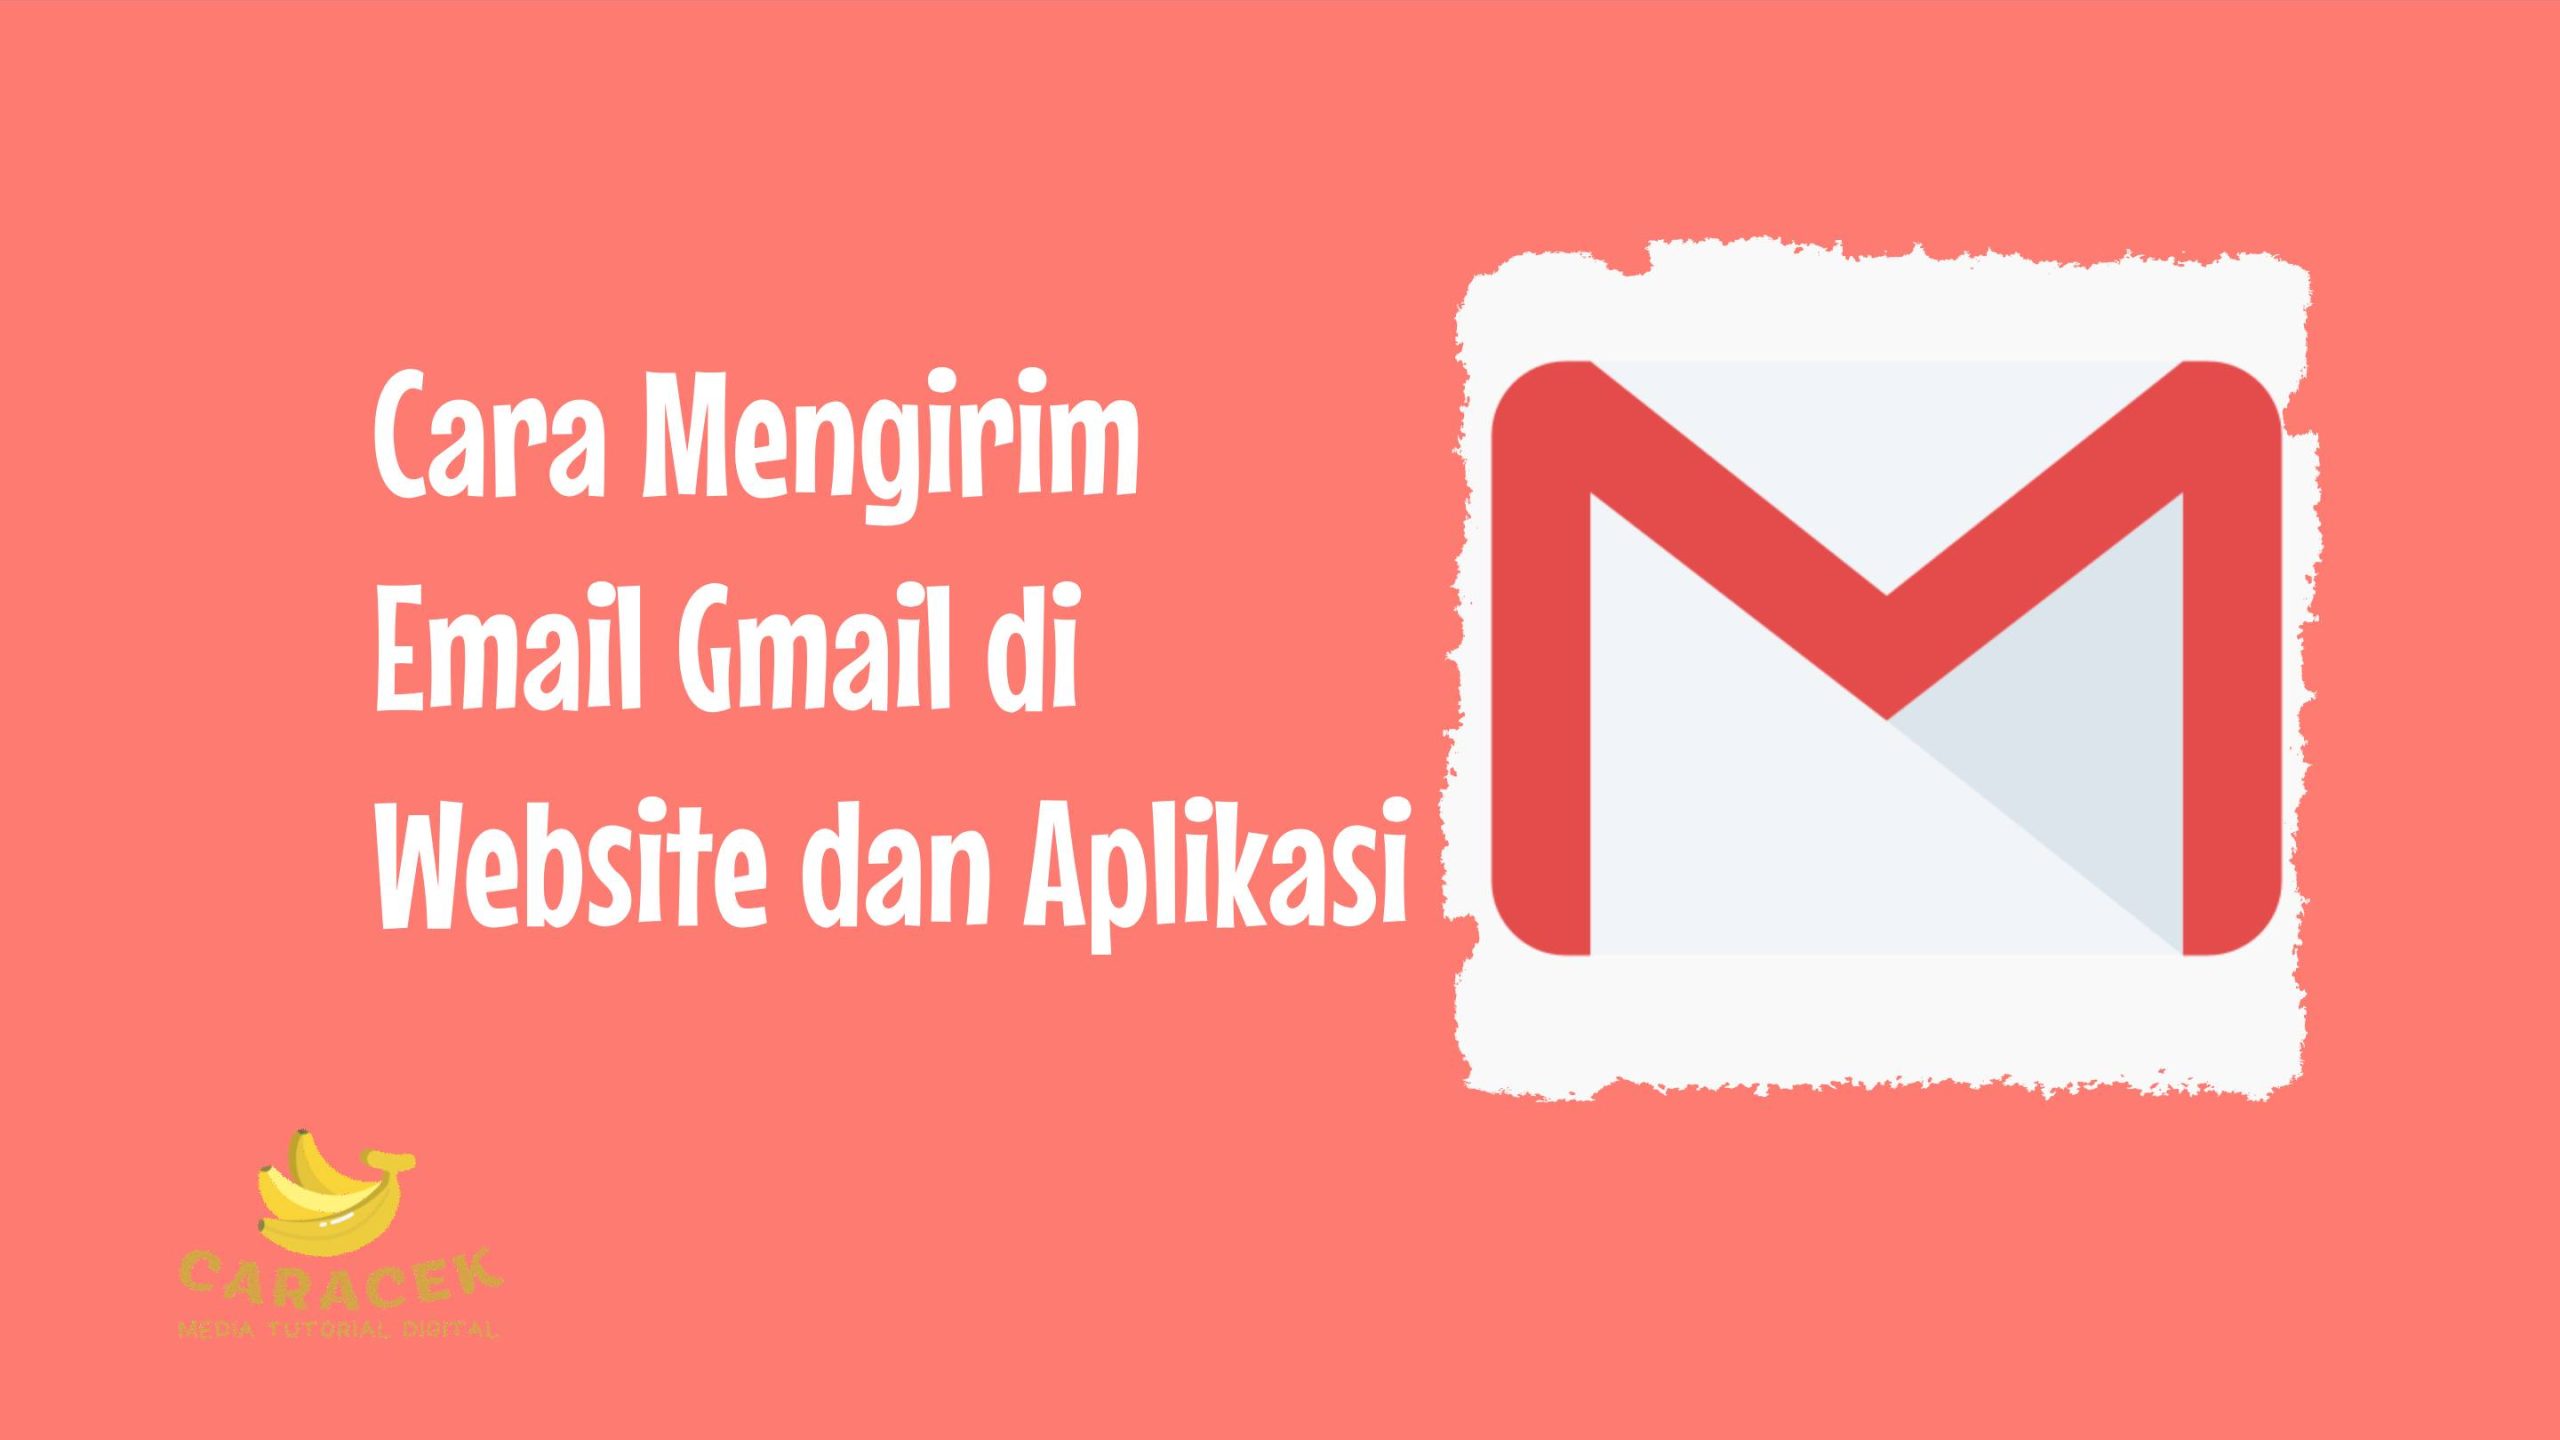 Cara Mengirim Email Gmail